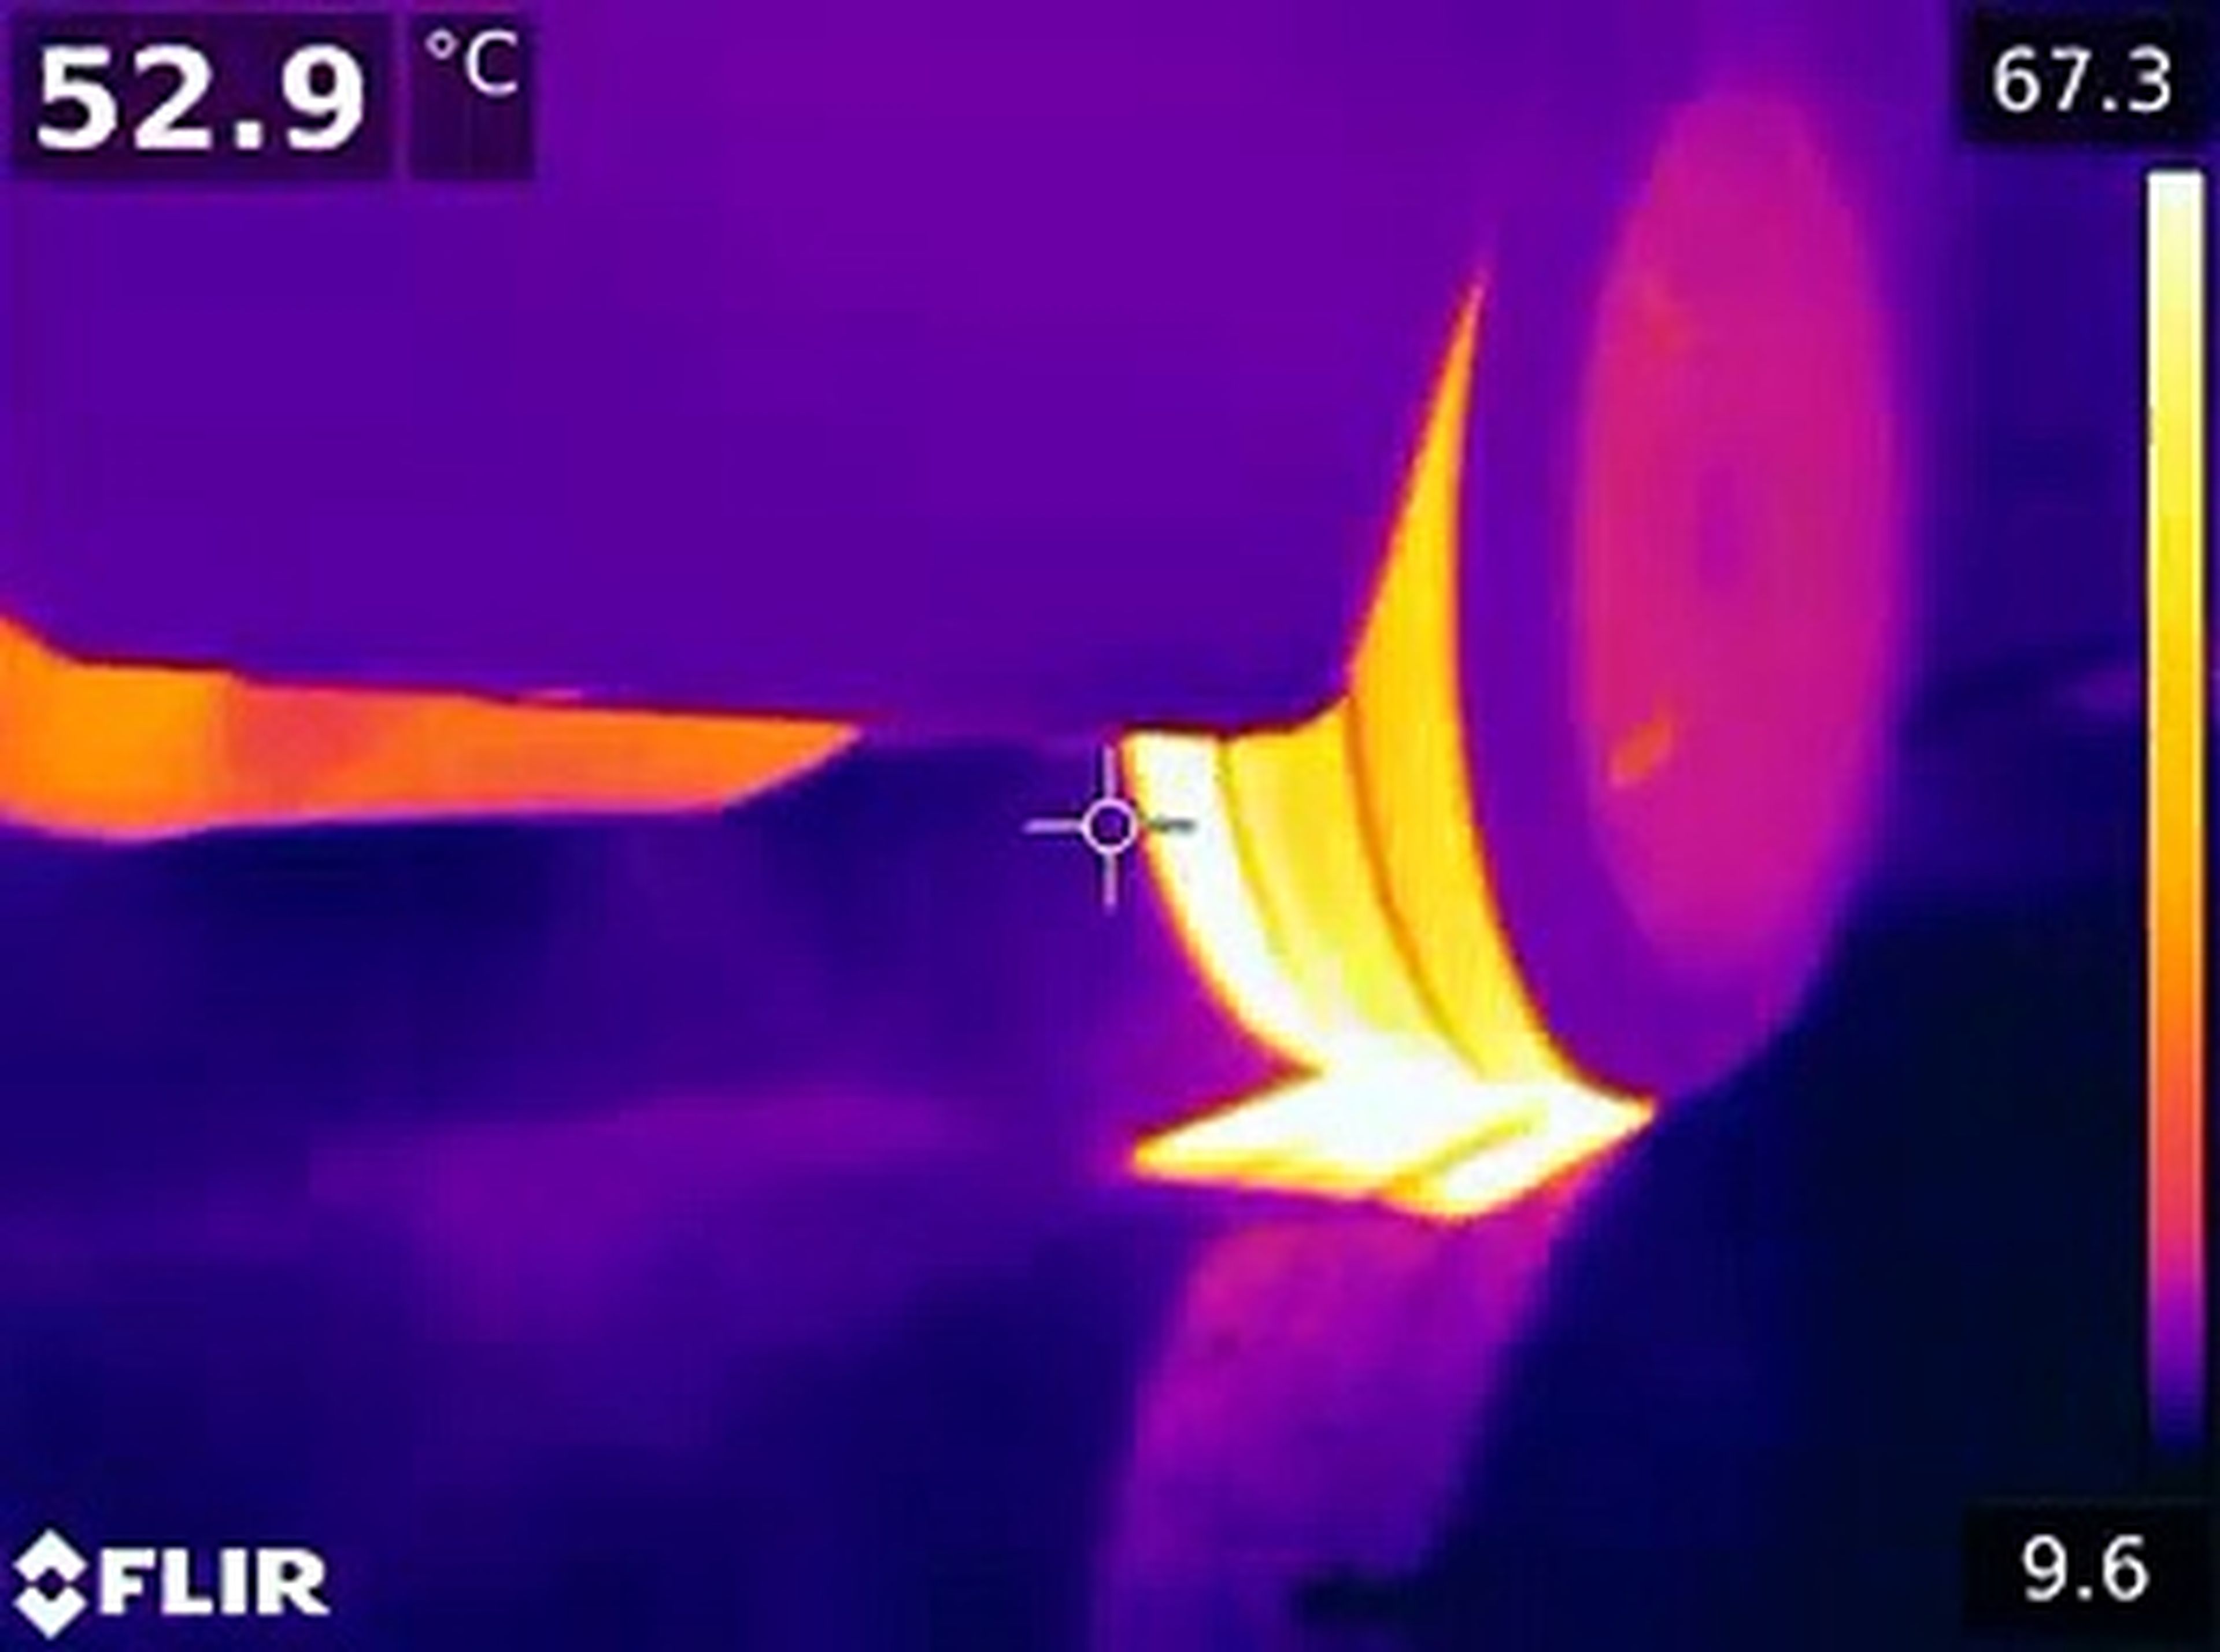 VÍDEO: un burnout visto desde una cámara térmica, simplemente espectacular